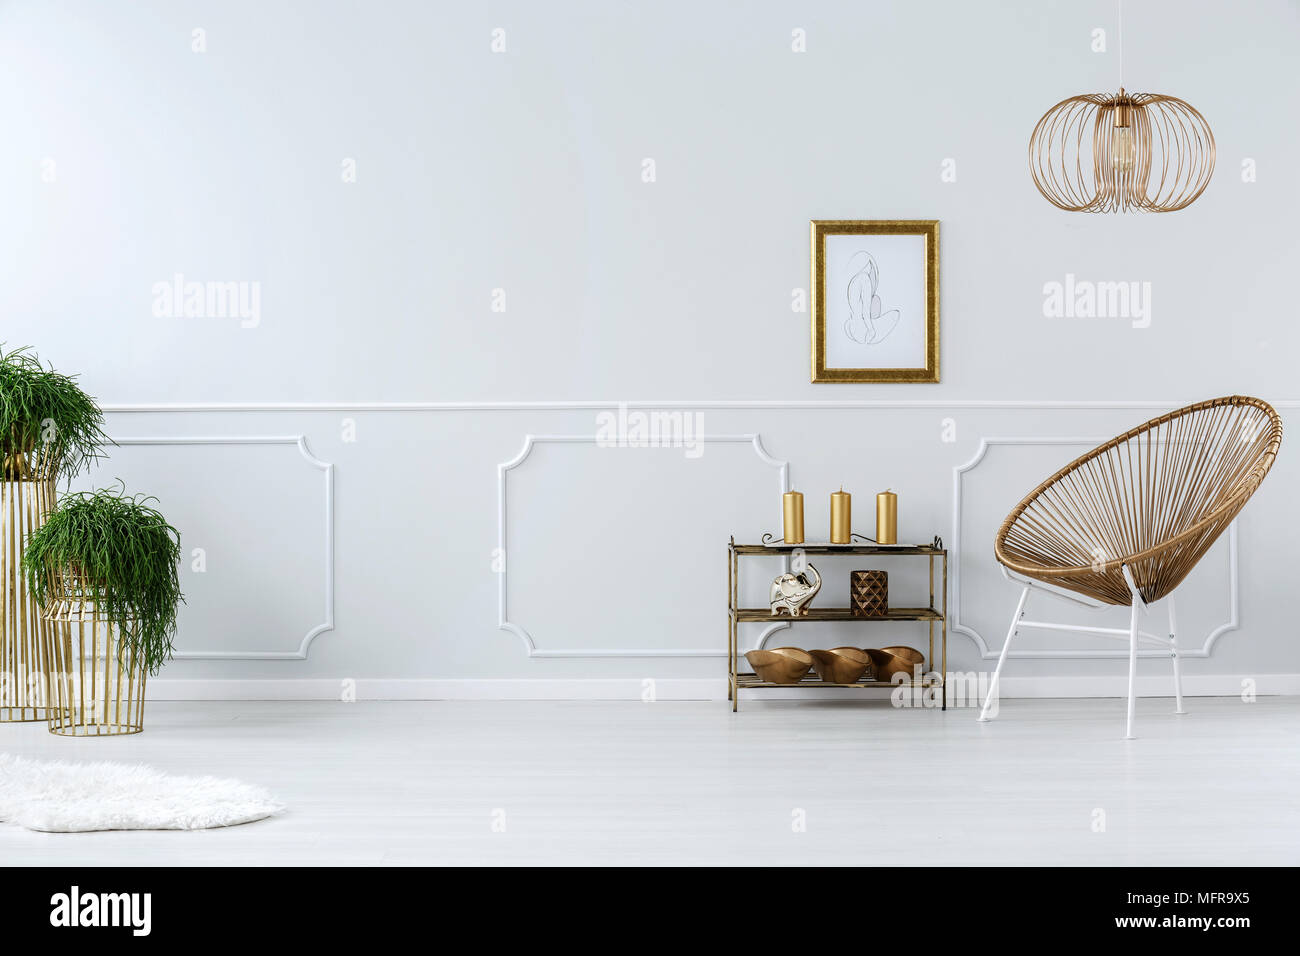 Wicker Chair moderne et dessin dans cadre doré sur fond blanc, mur vide dans un élégant salon intérieur Banque D'Images